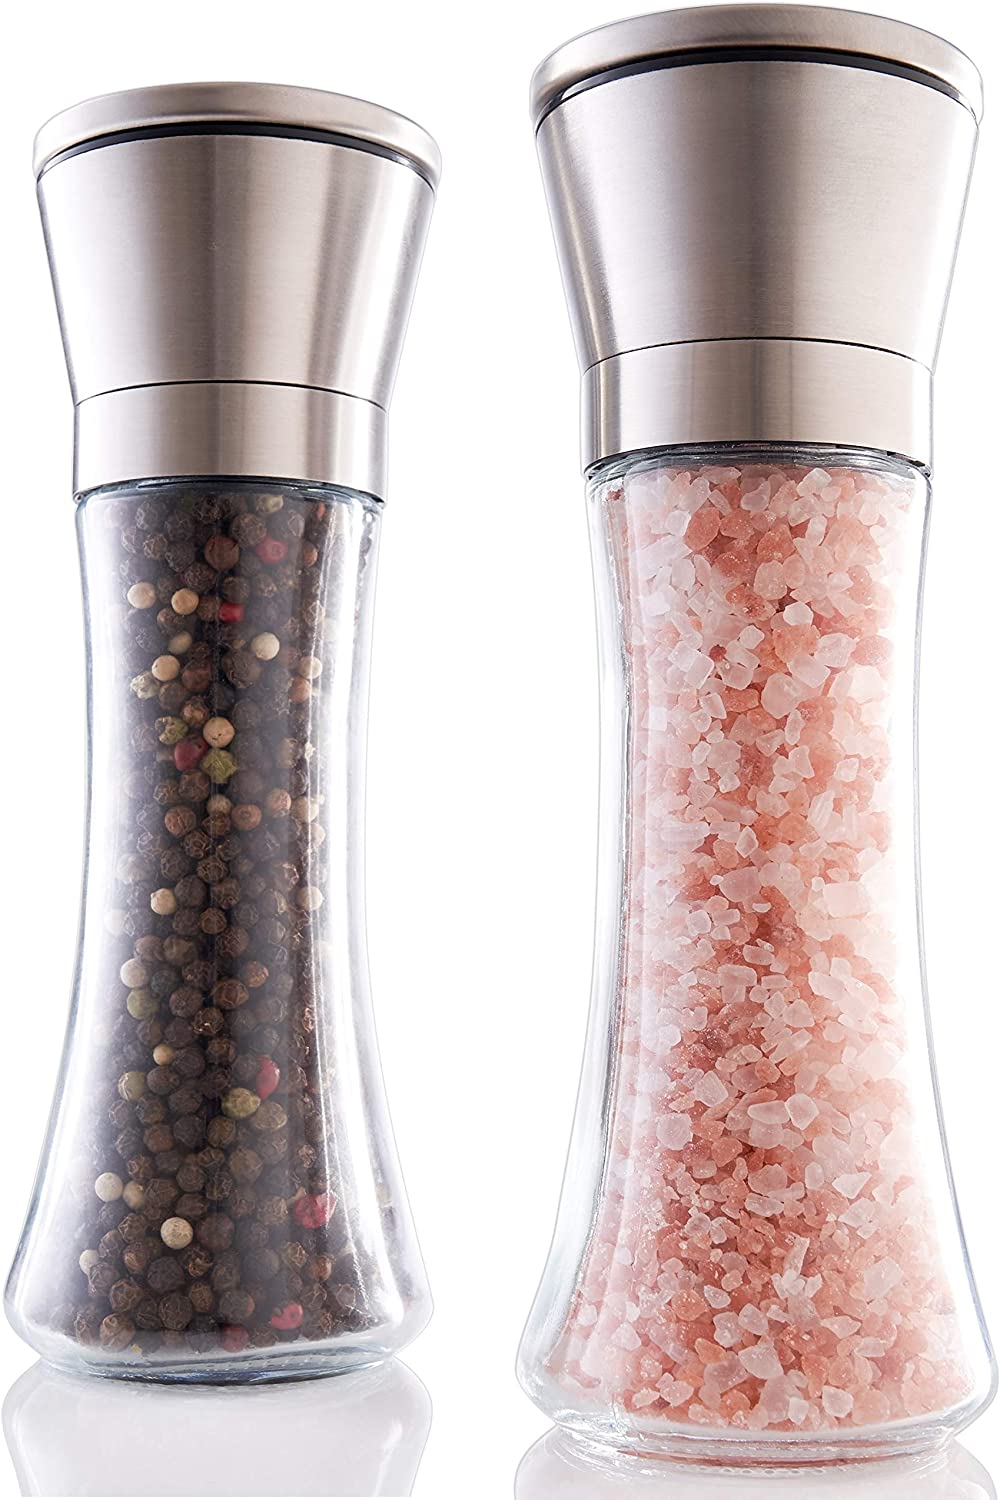 18 Best Salt & Pepper Grinder Sets In 2023, As Per Food Experts